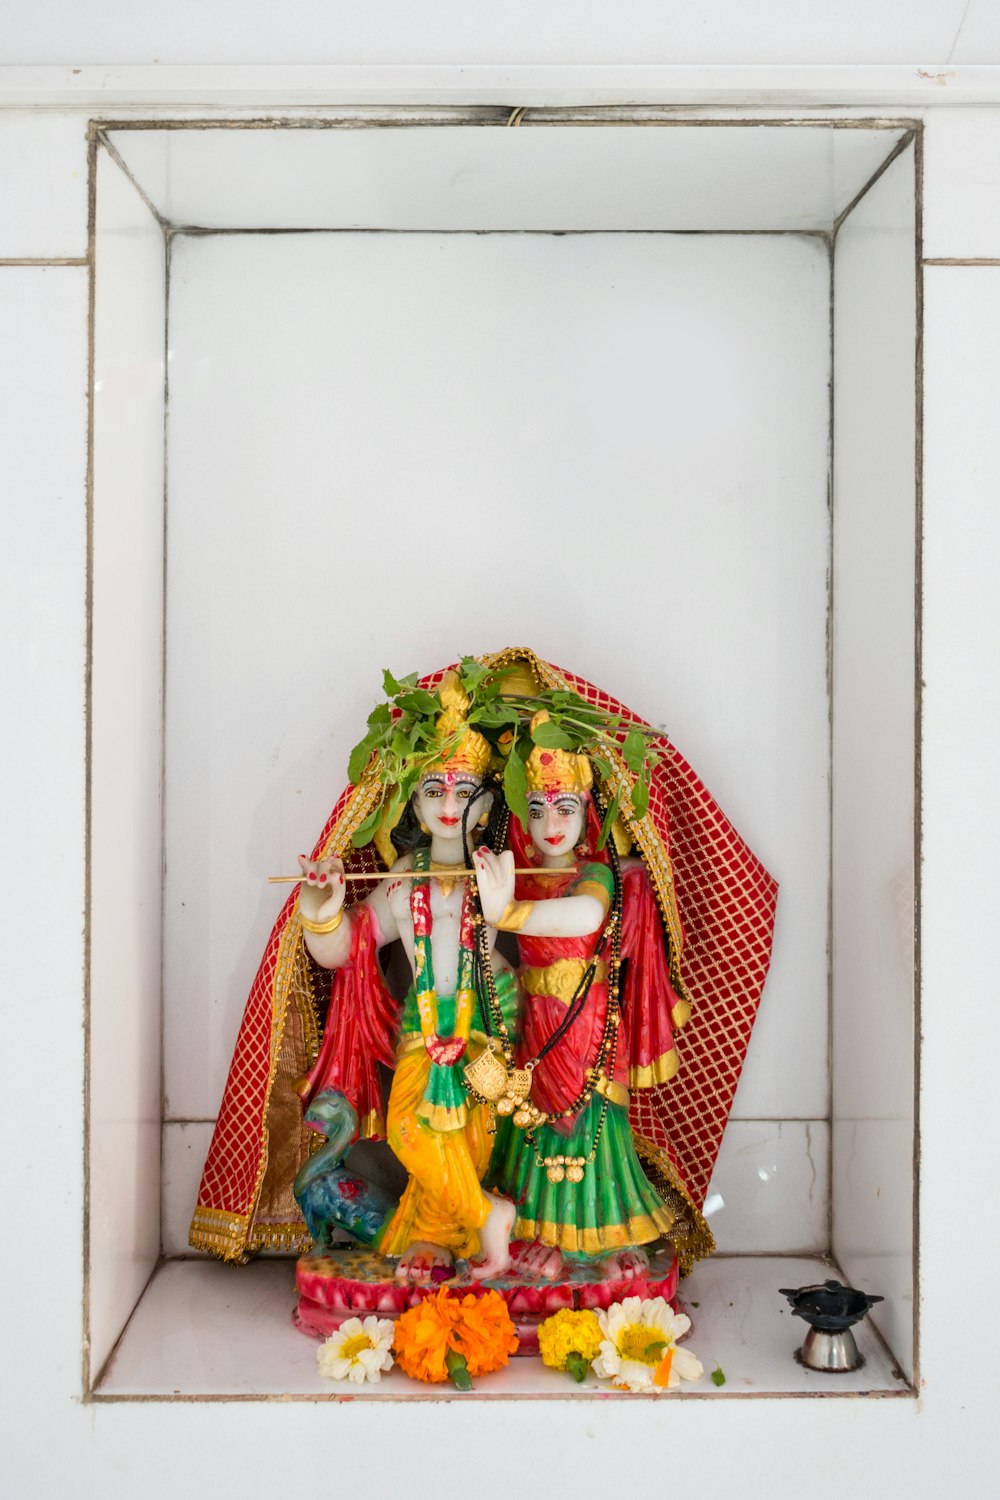 a statue of a hindu god in a niche